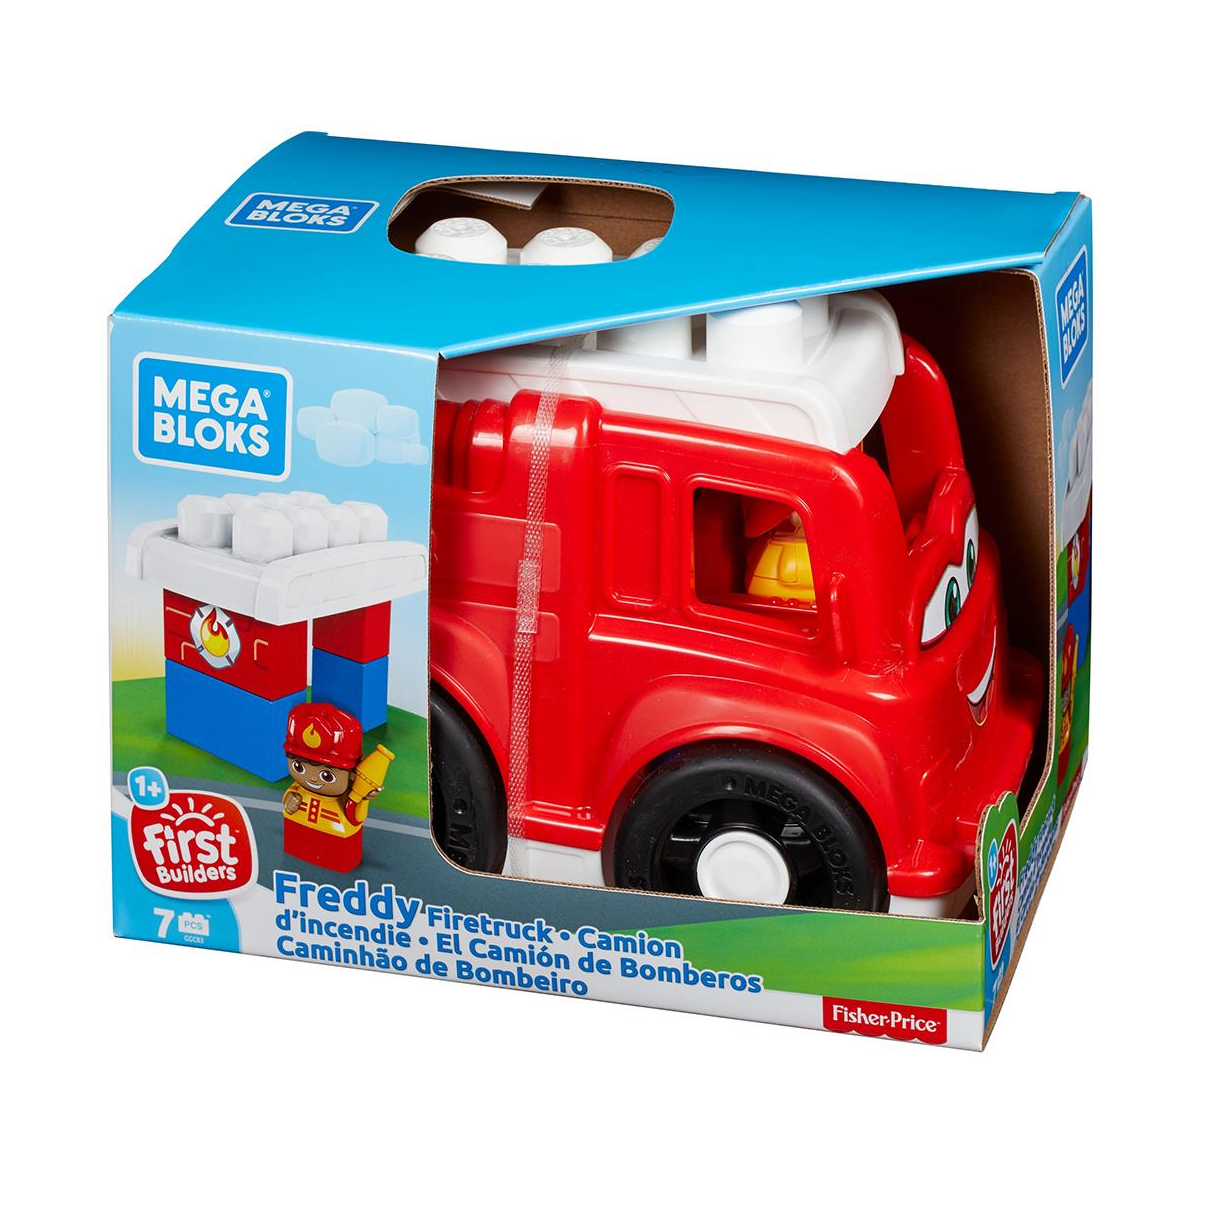 Caminhão Bombeiro - Cardoso Toys